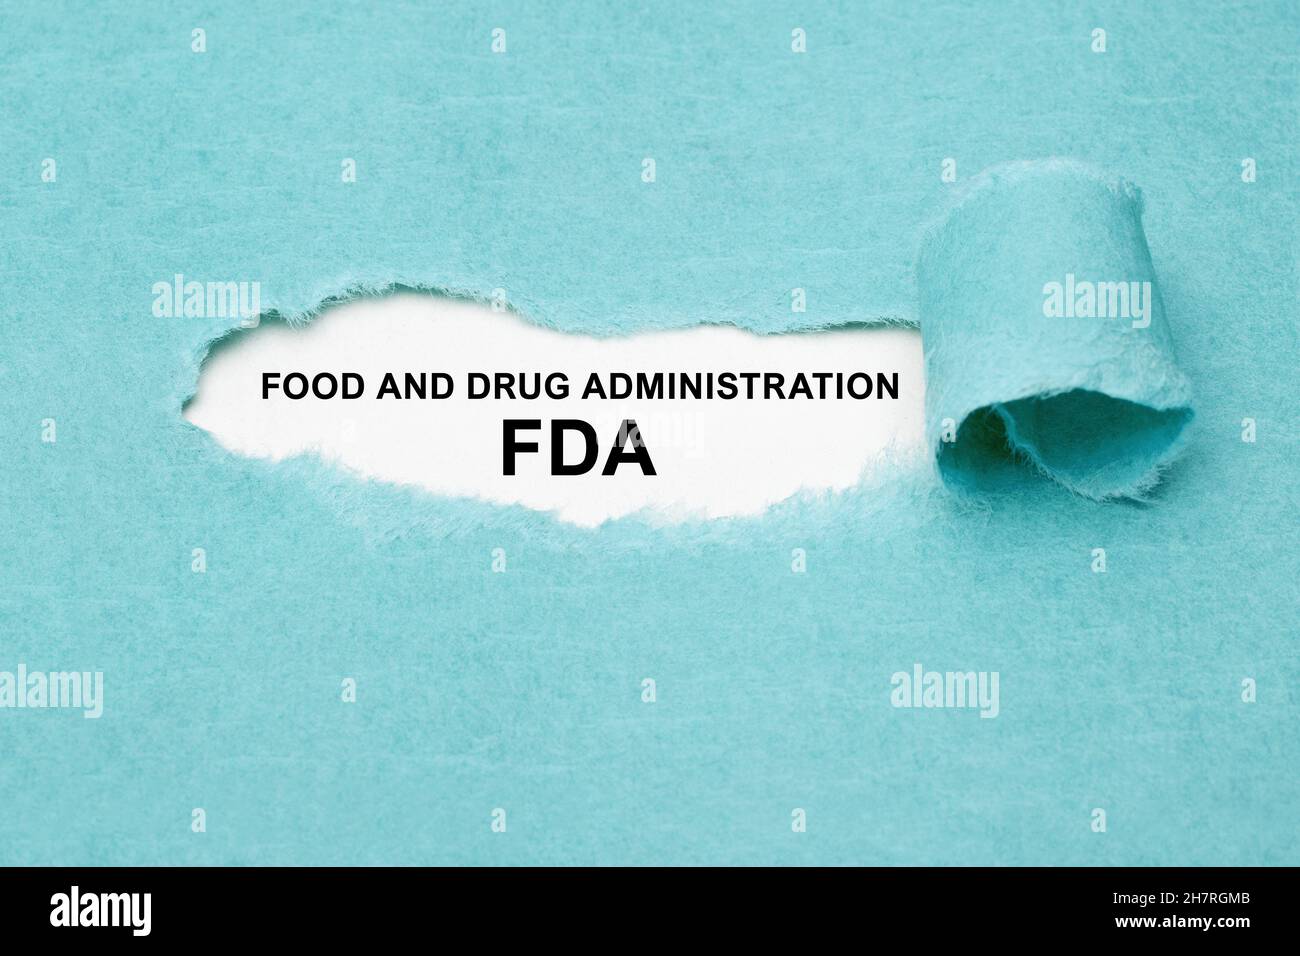 Texto impreso FDA Food and Drug Administration que aparece detrás de papel azul rasgado. Foto de stock